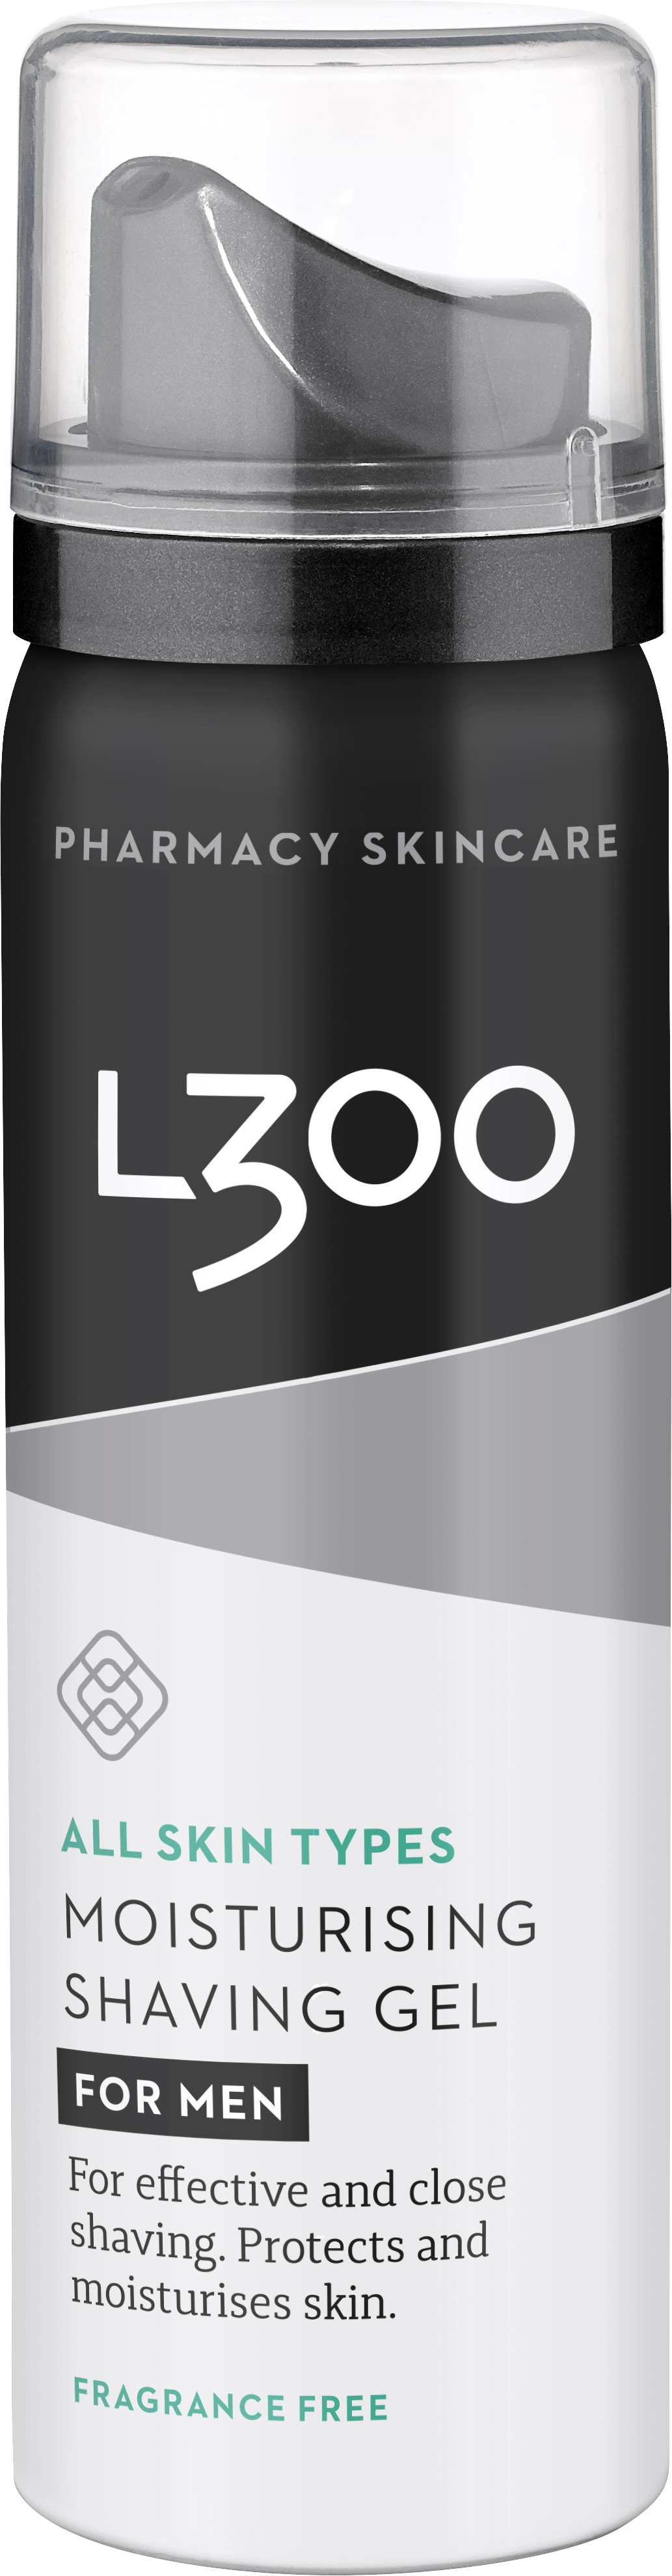 L300 For Men Shaving Gel 50 ml